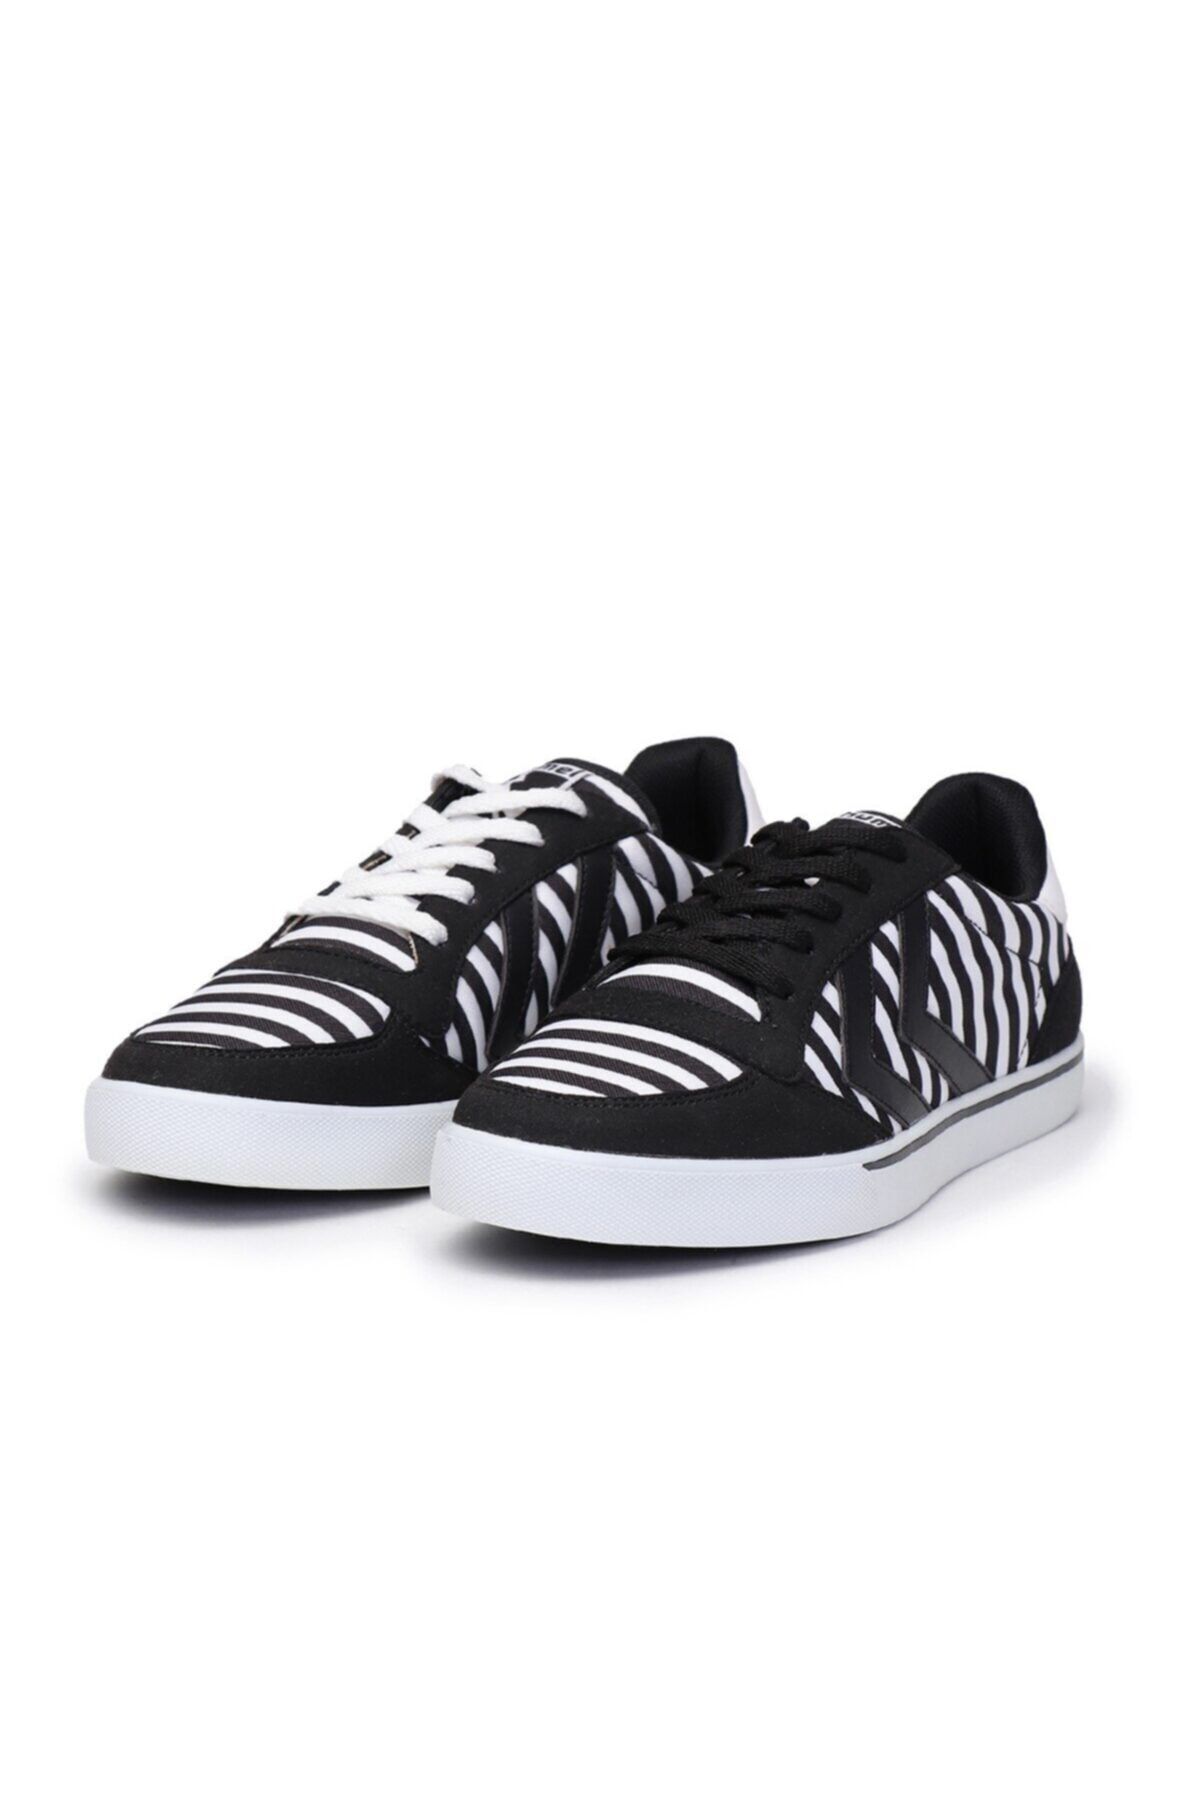 HUMMEL HMLSTADIL PRINT Siyah Kadın Sneaker 101085987 Fiyatı, Yorumları - Trendyol